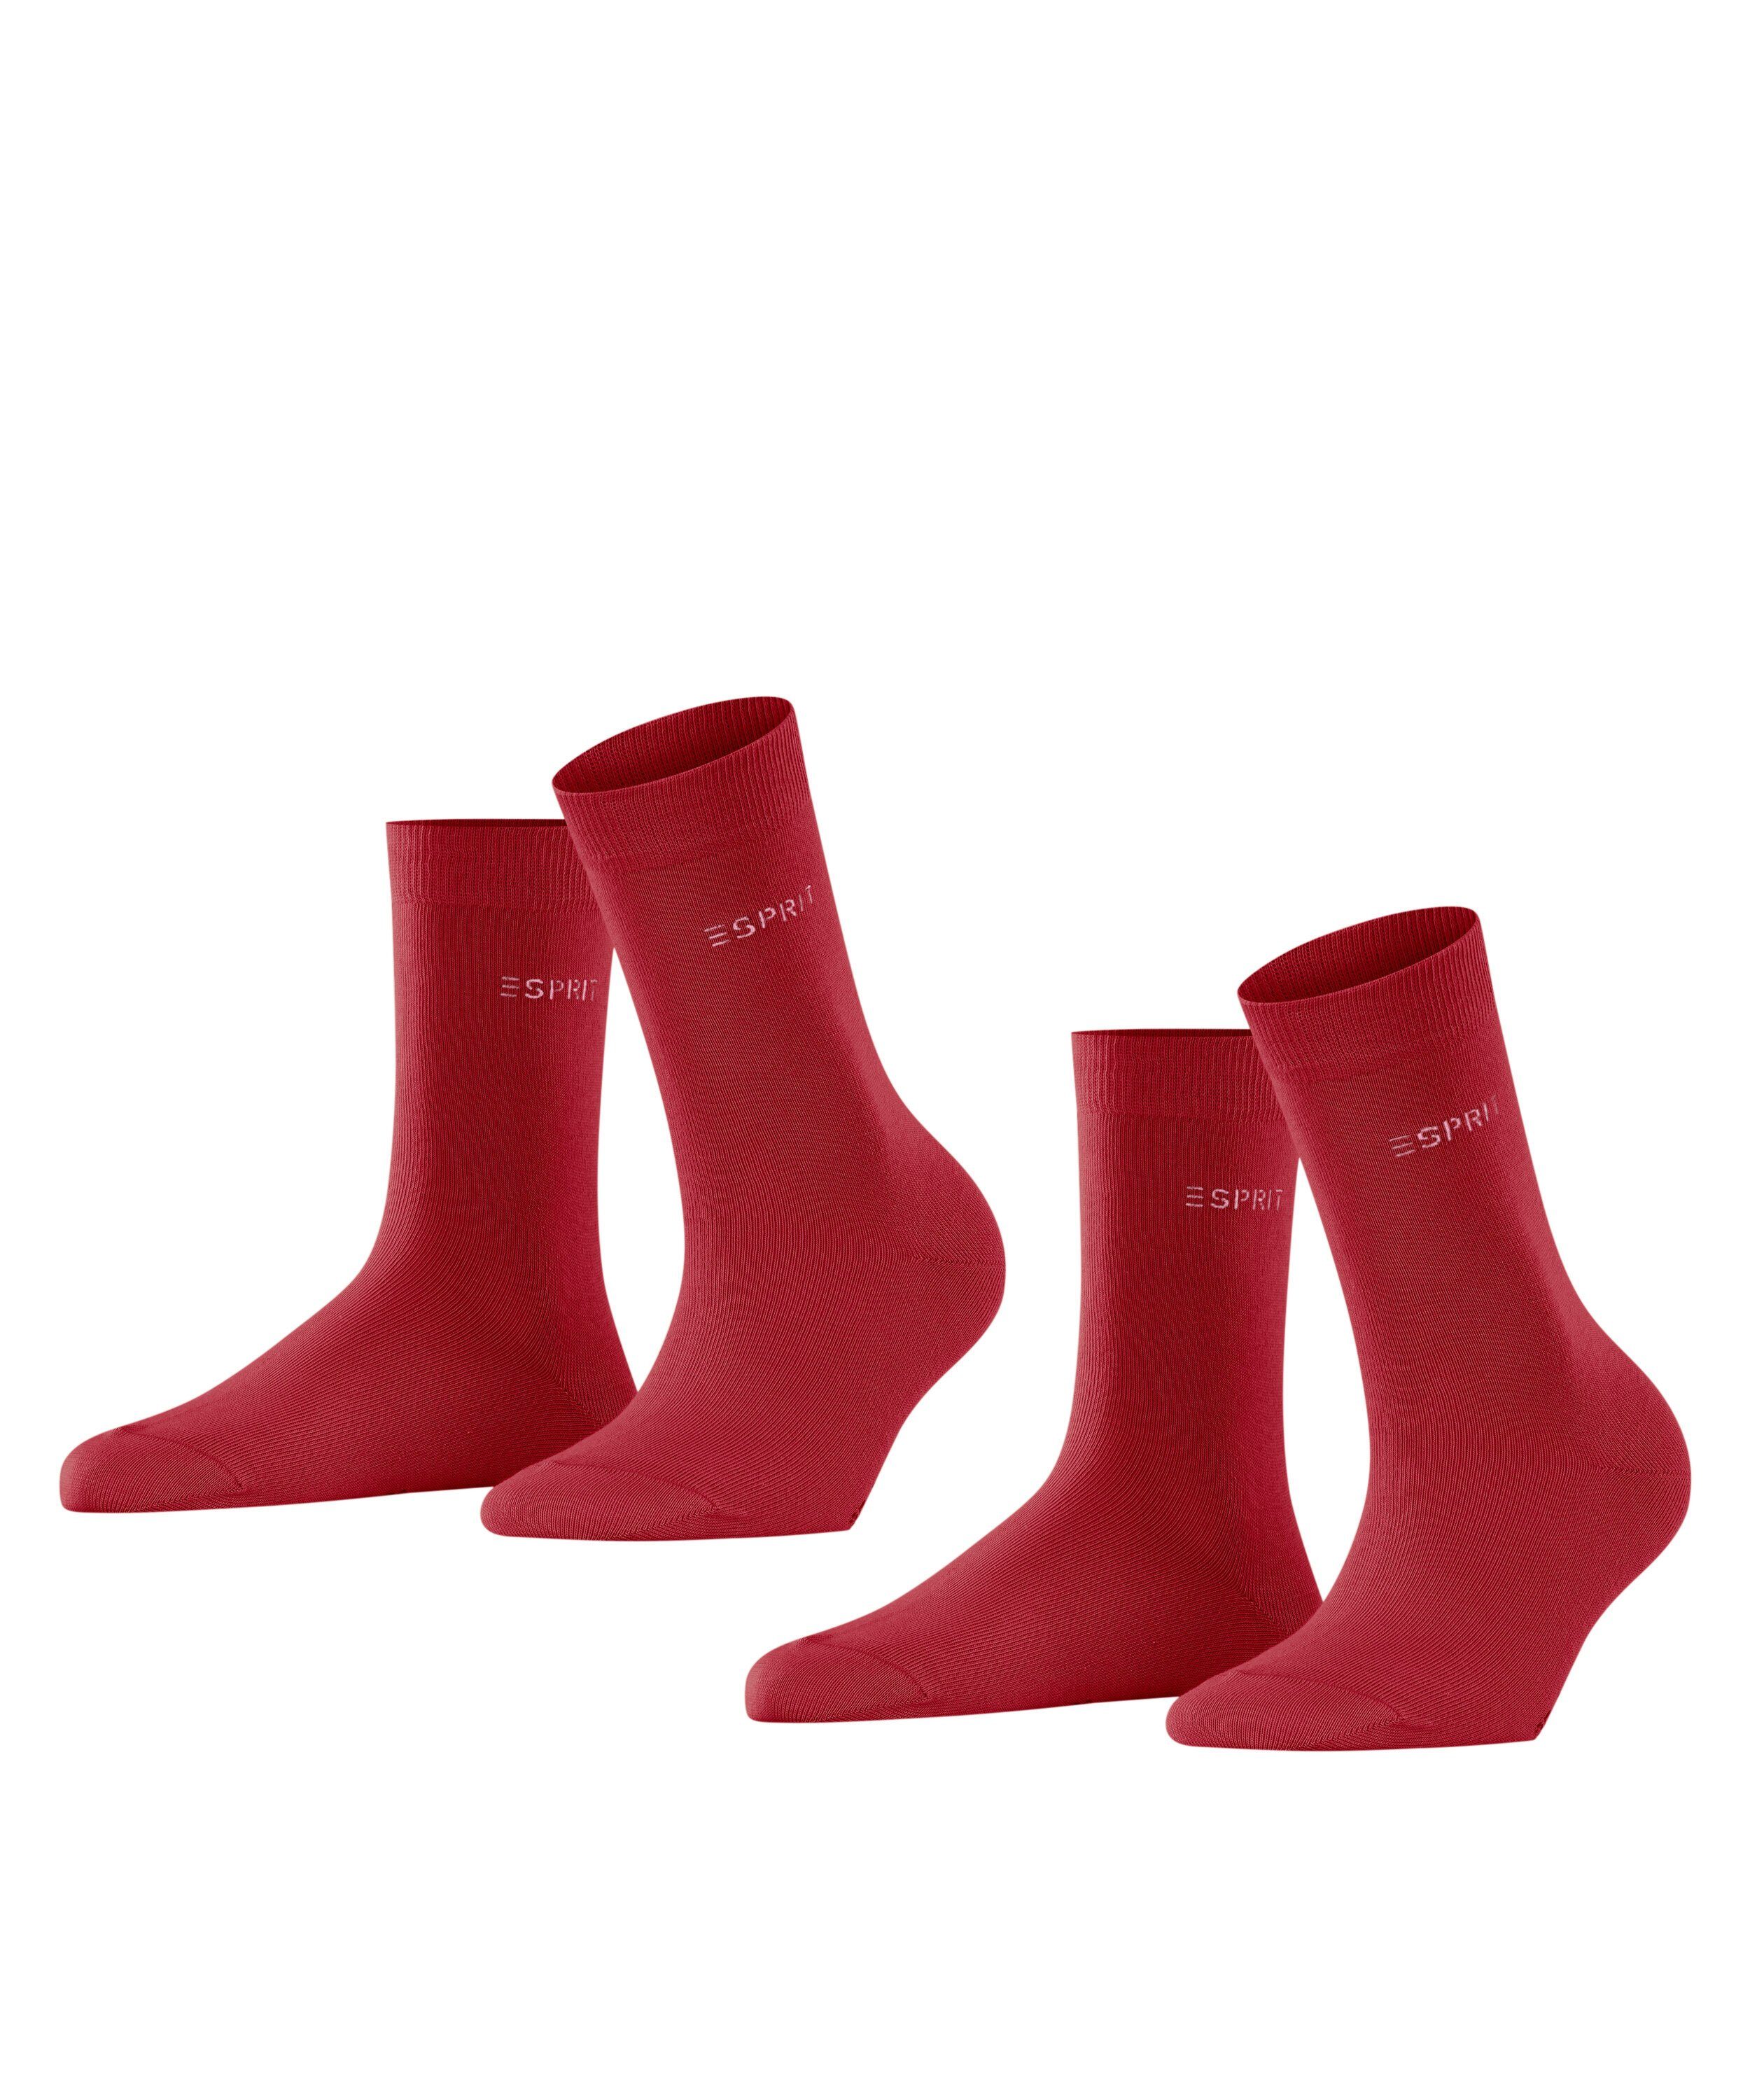 Super willkommen diesen Monat Esprit Socken Uni 2-Pack (2-Paar) red (8074) pepper